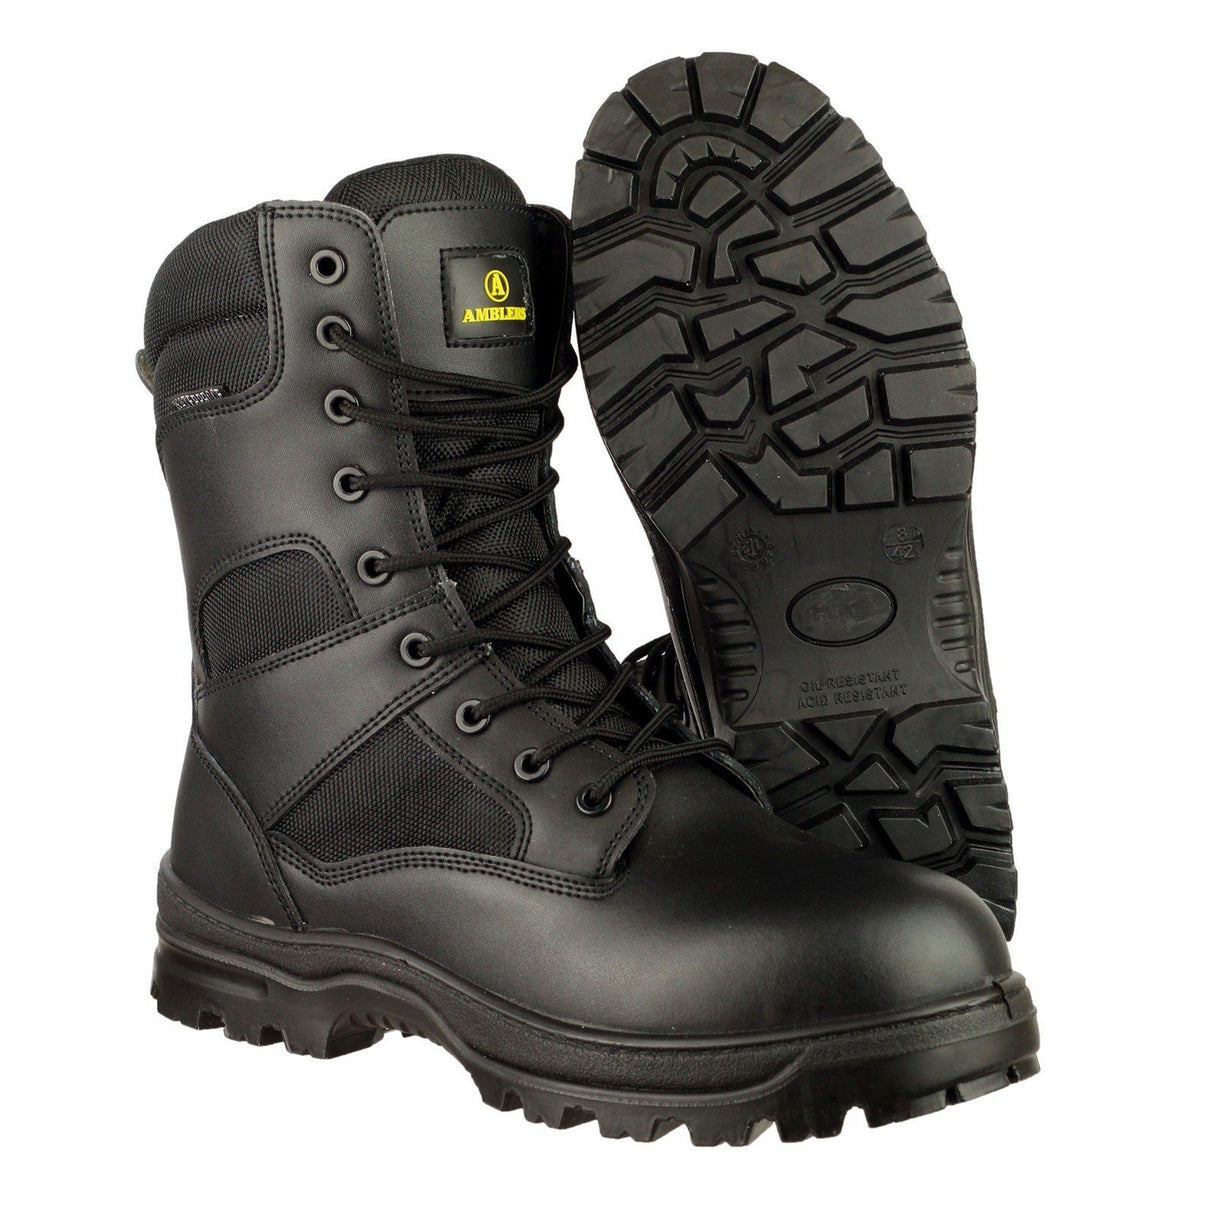 Amblers Combat Hi-Leg Waterproof Metal Free Boot